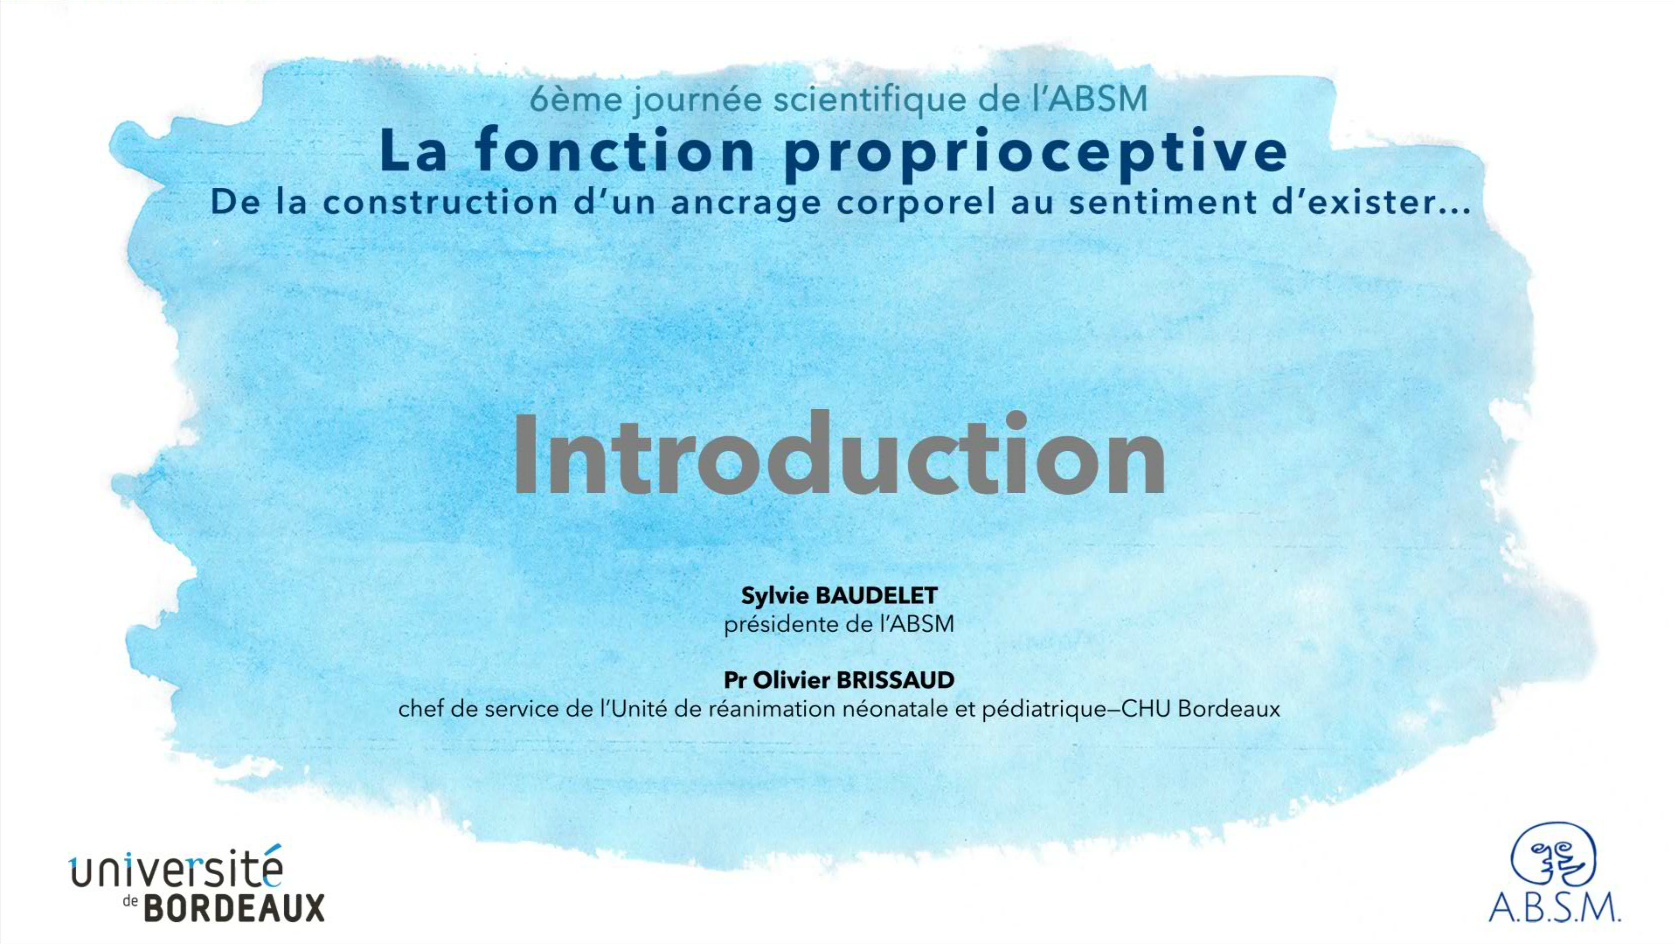 Sixième journée Scientifique de l'ABSM / Introduction